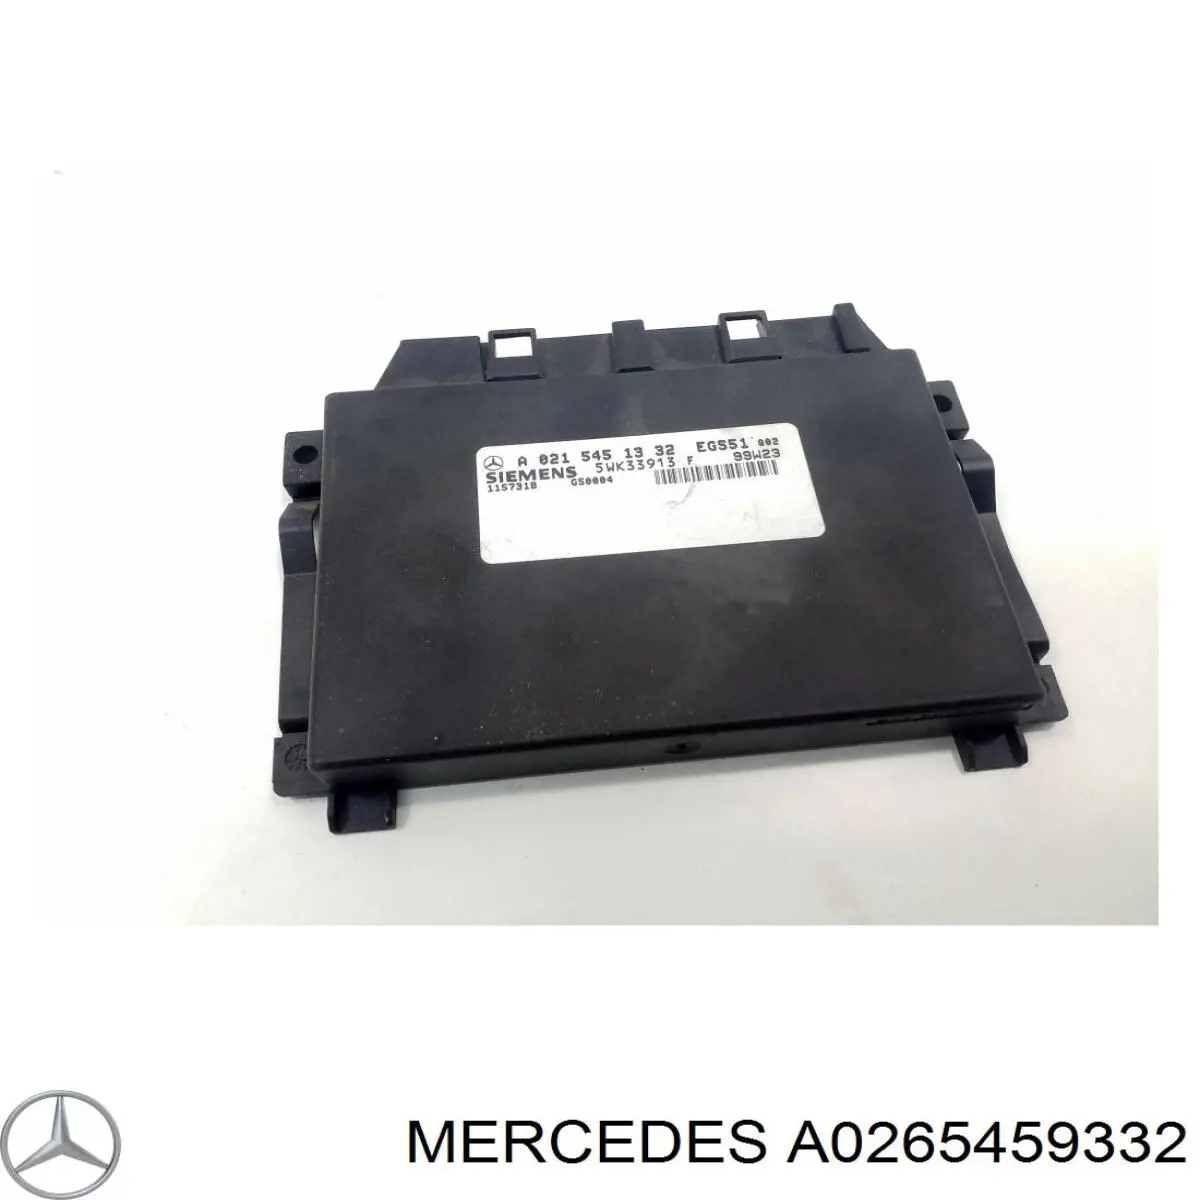 A0215451332 Mercedes modulo de control electronico (ecu)